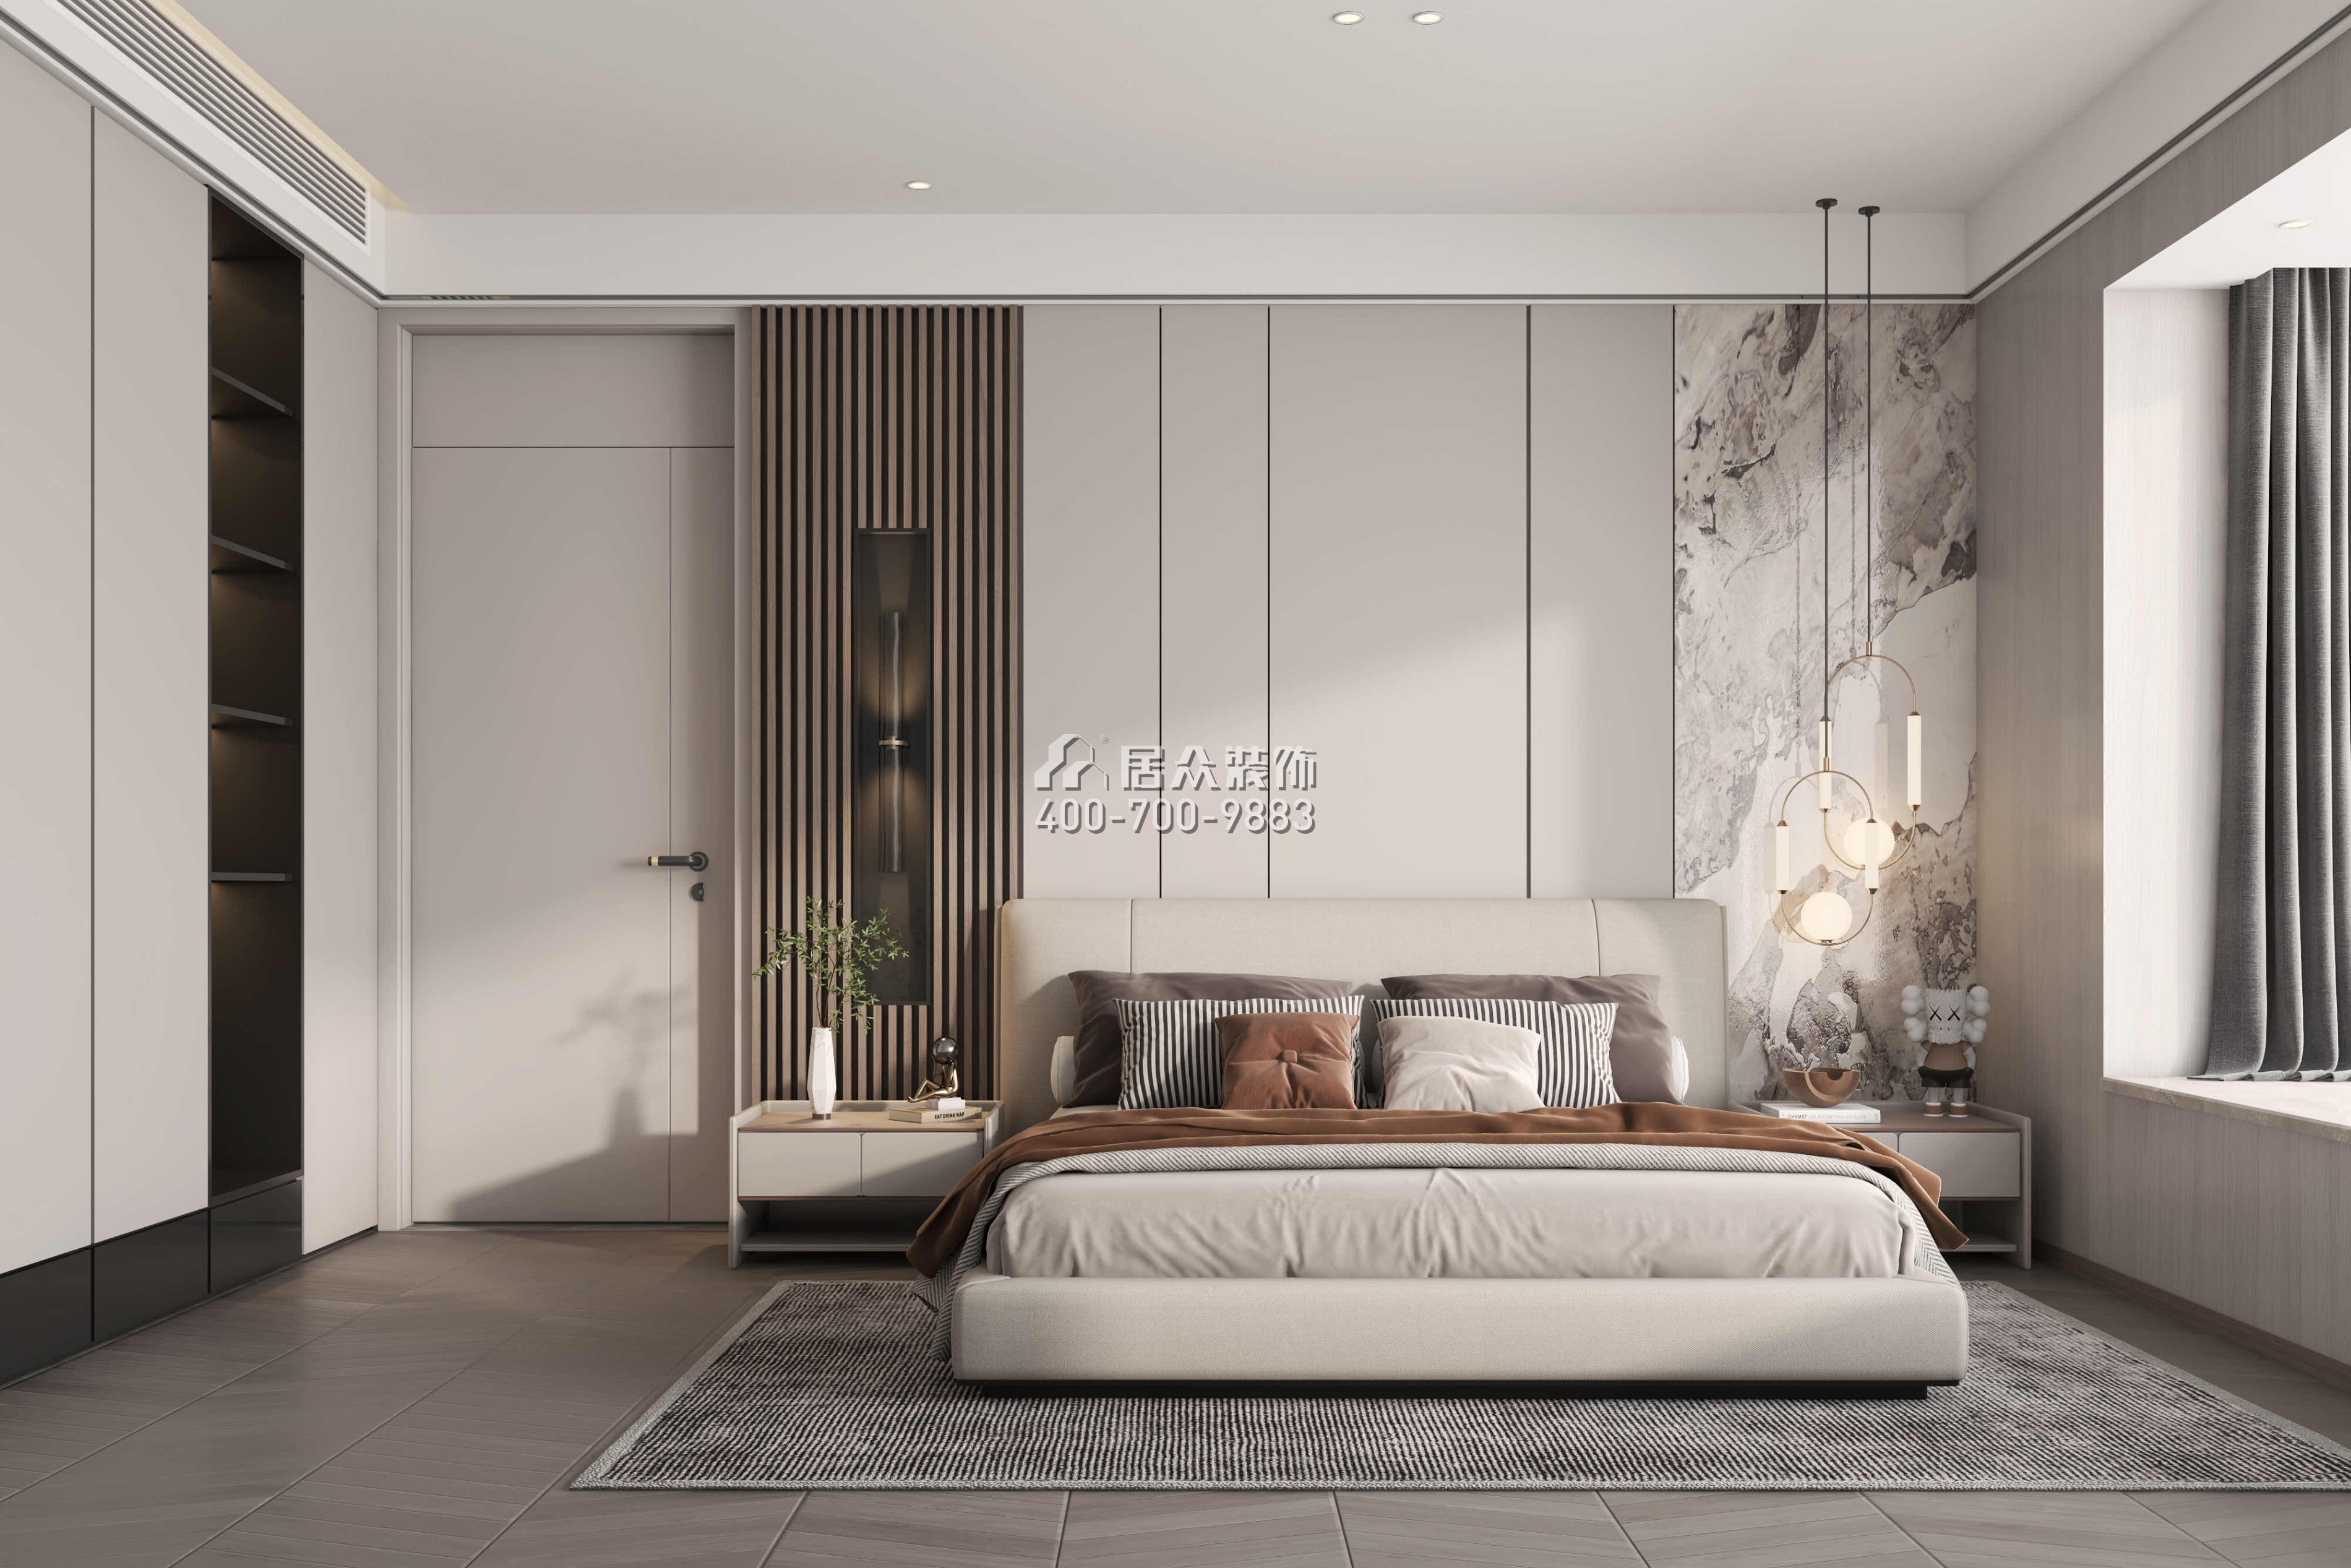 恒裕滨城花园110平方米现代简约风格平层户型卧室装修效果图